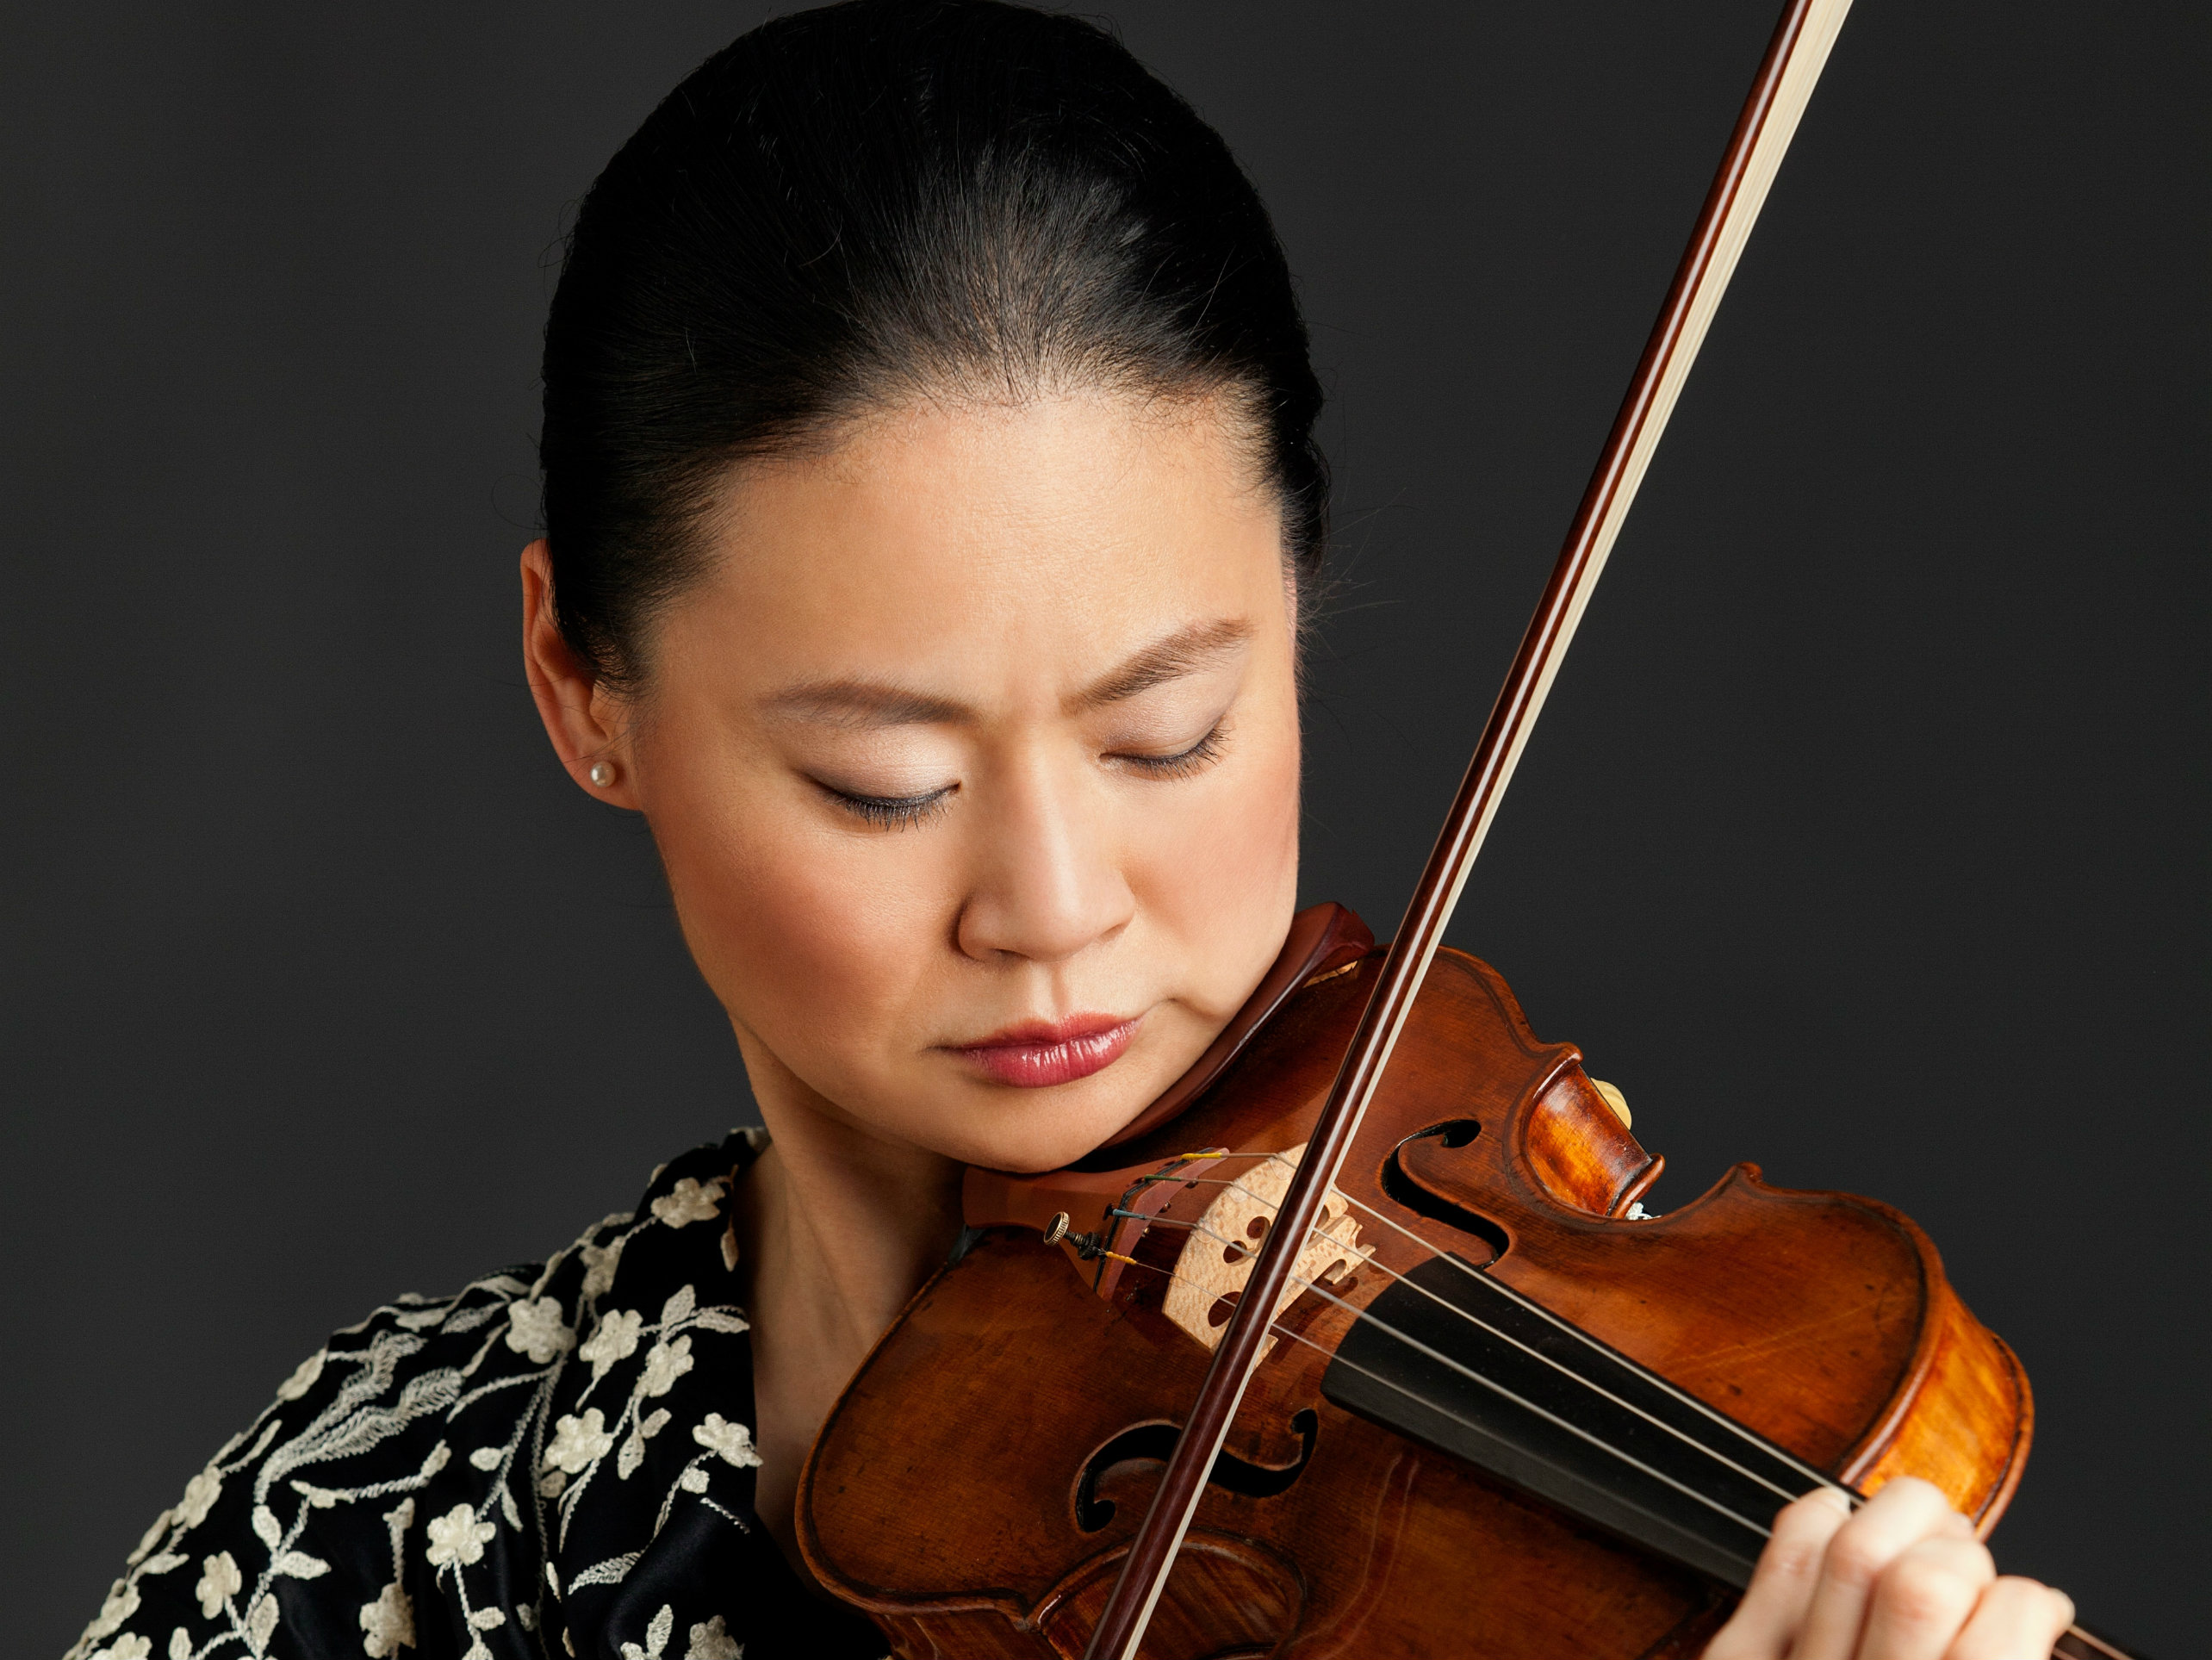 Photo: Violinist Midori Goto